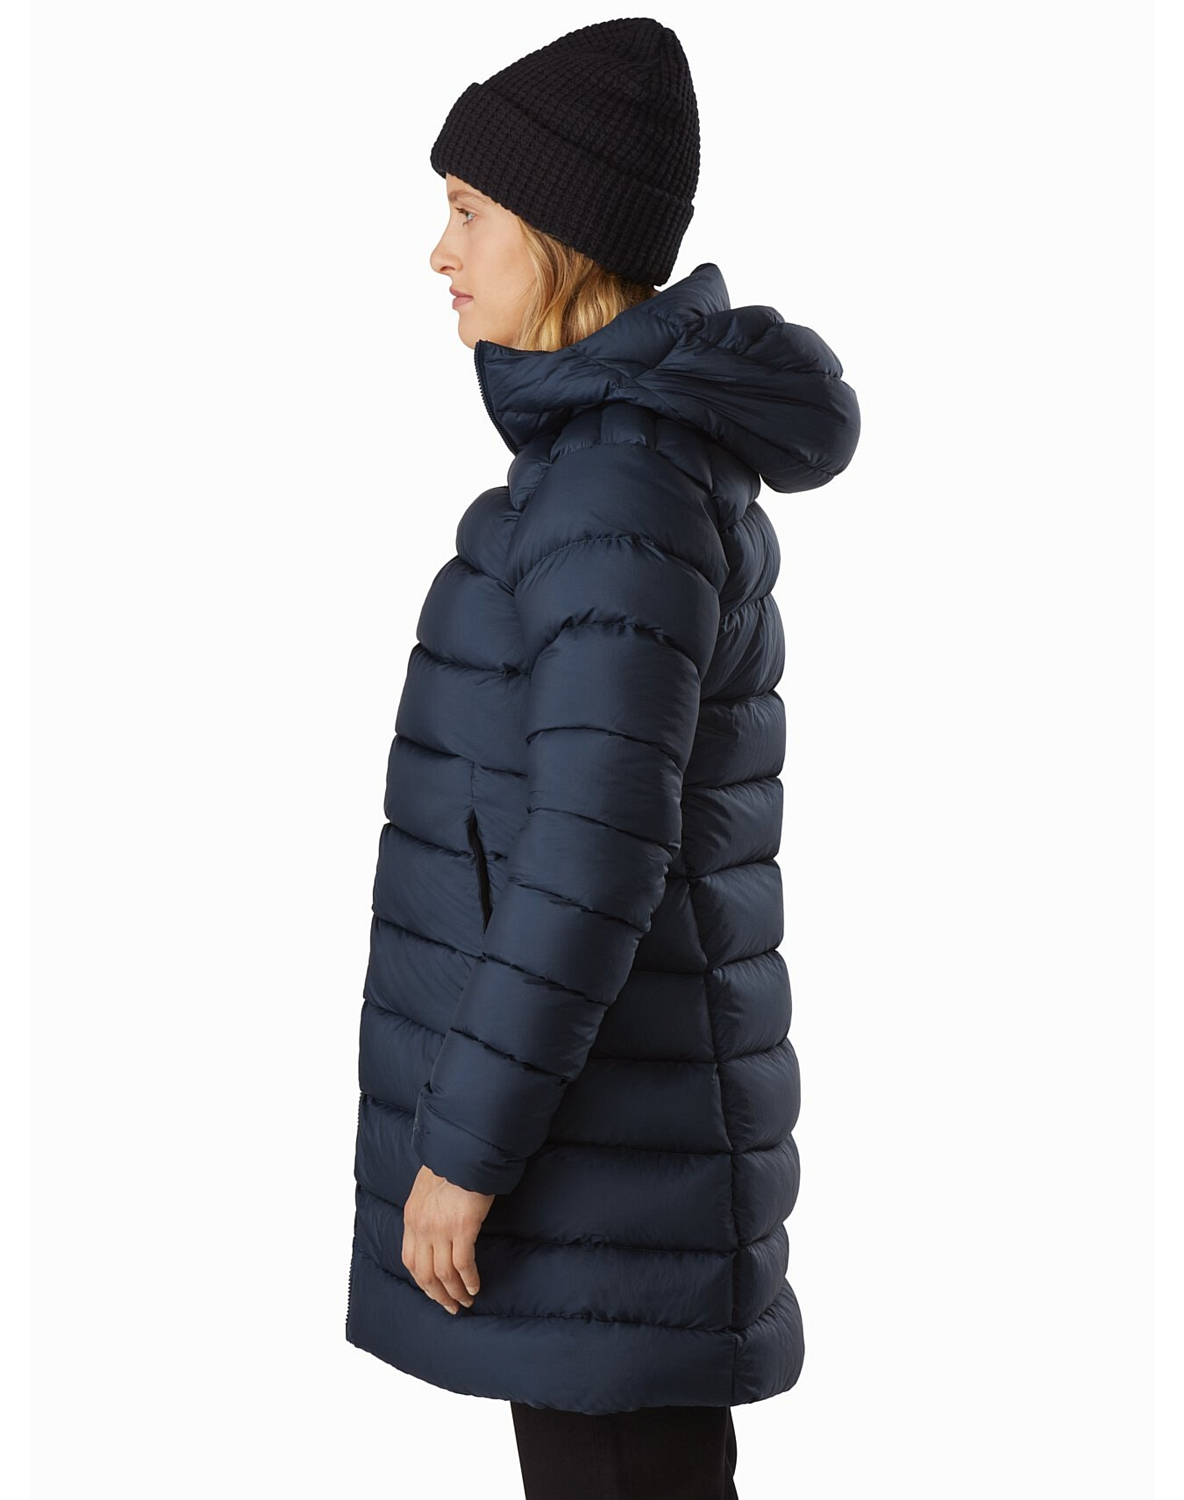 Куртка для активного отдыха Arcteryx 2020-21 Seyla Coat Women's Megacosm